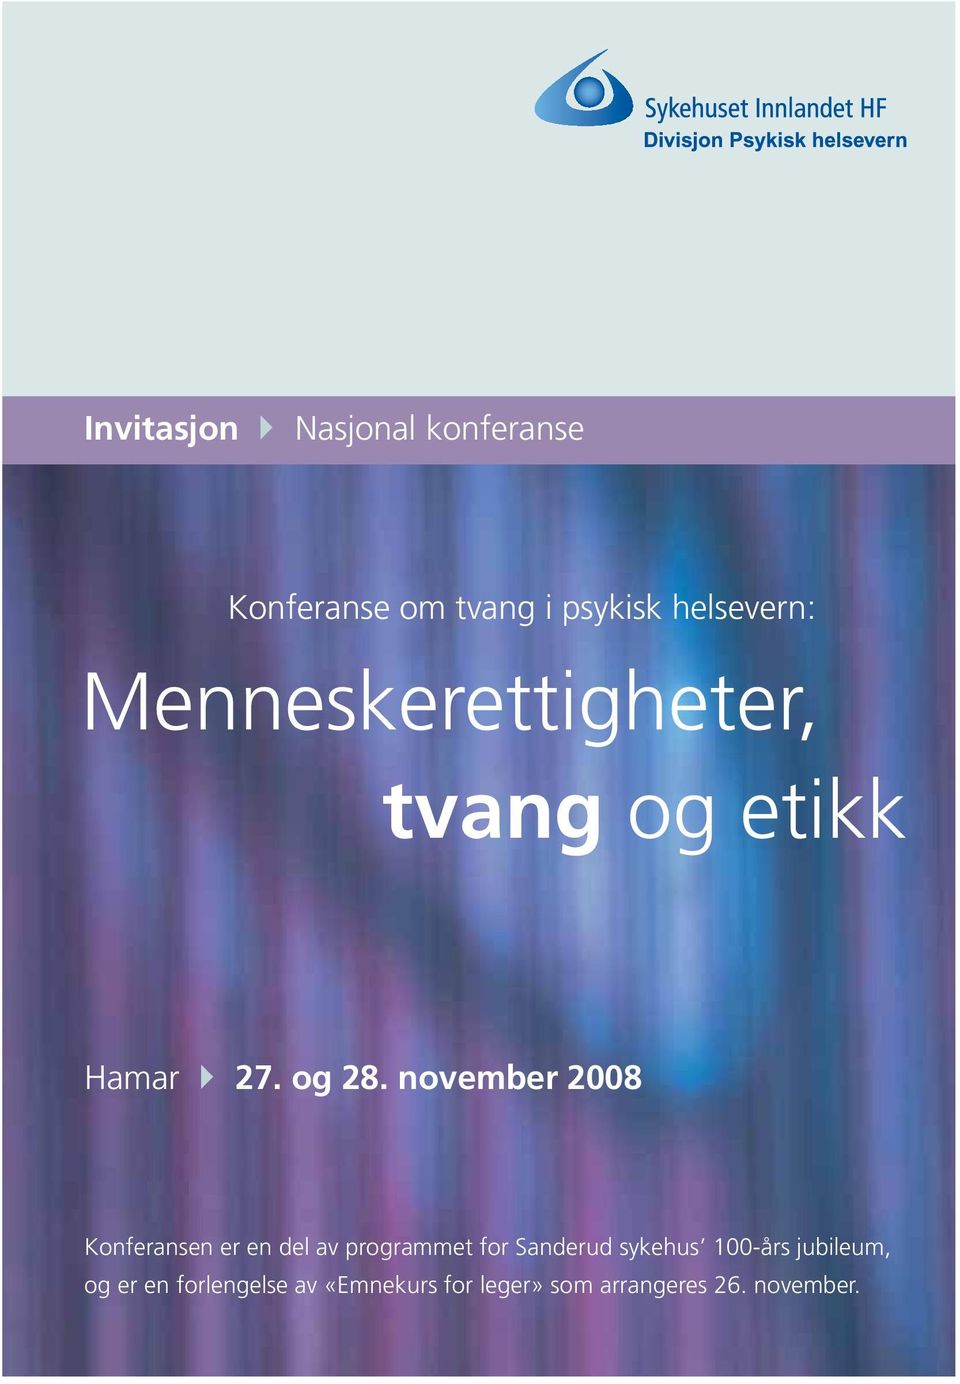 november 2008 Konferansen er en del av programmet for Sanderud sykehus